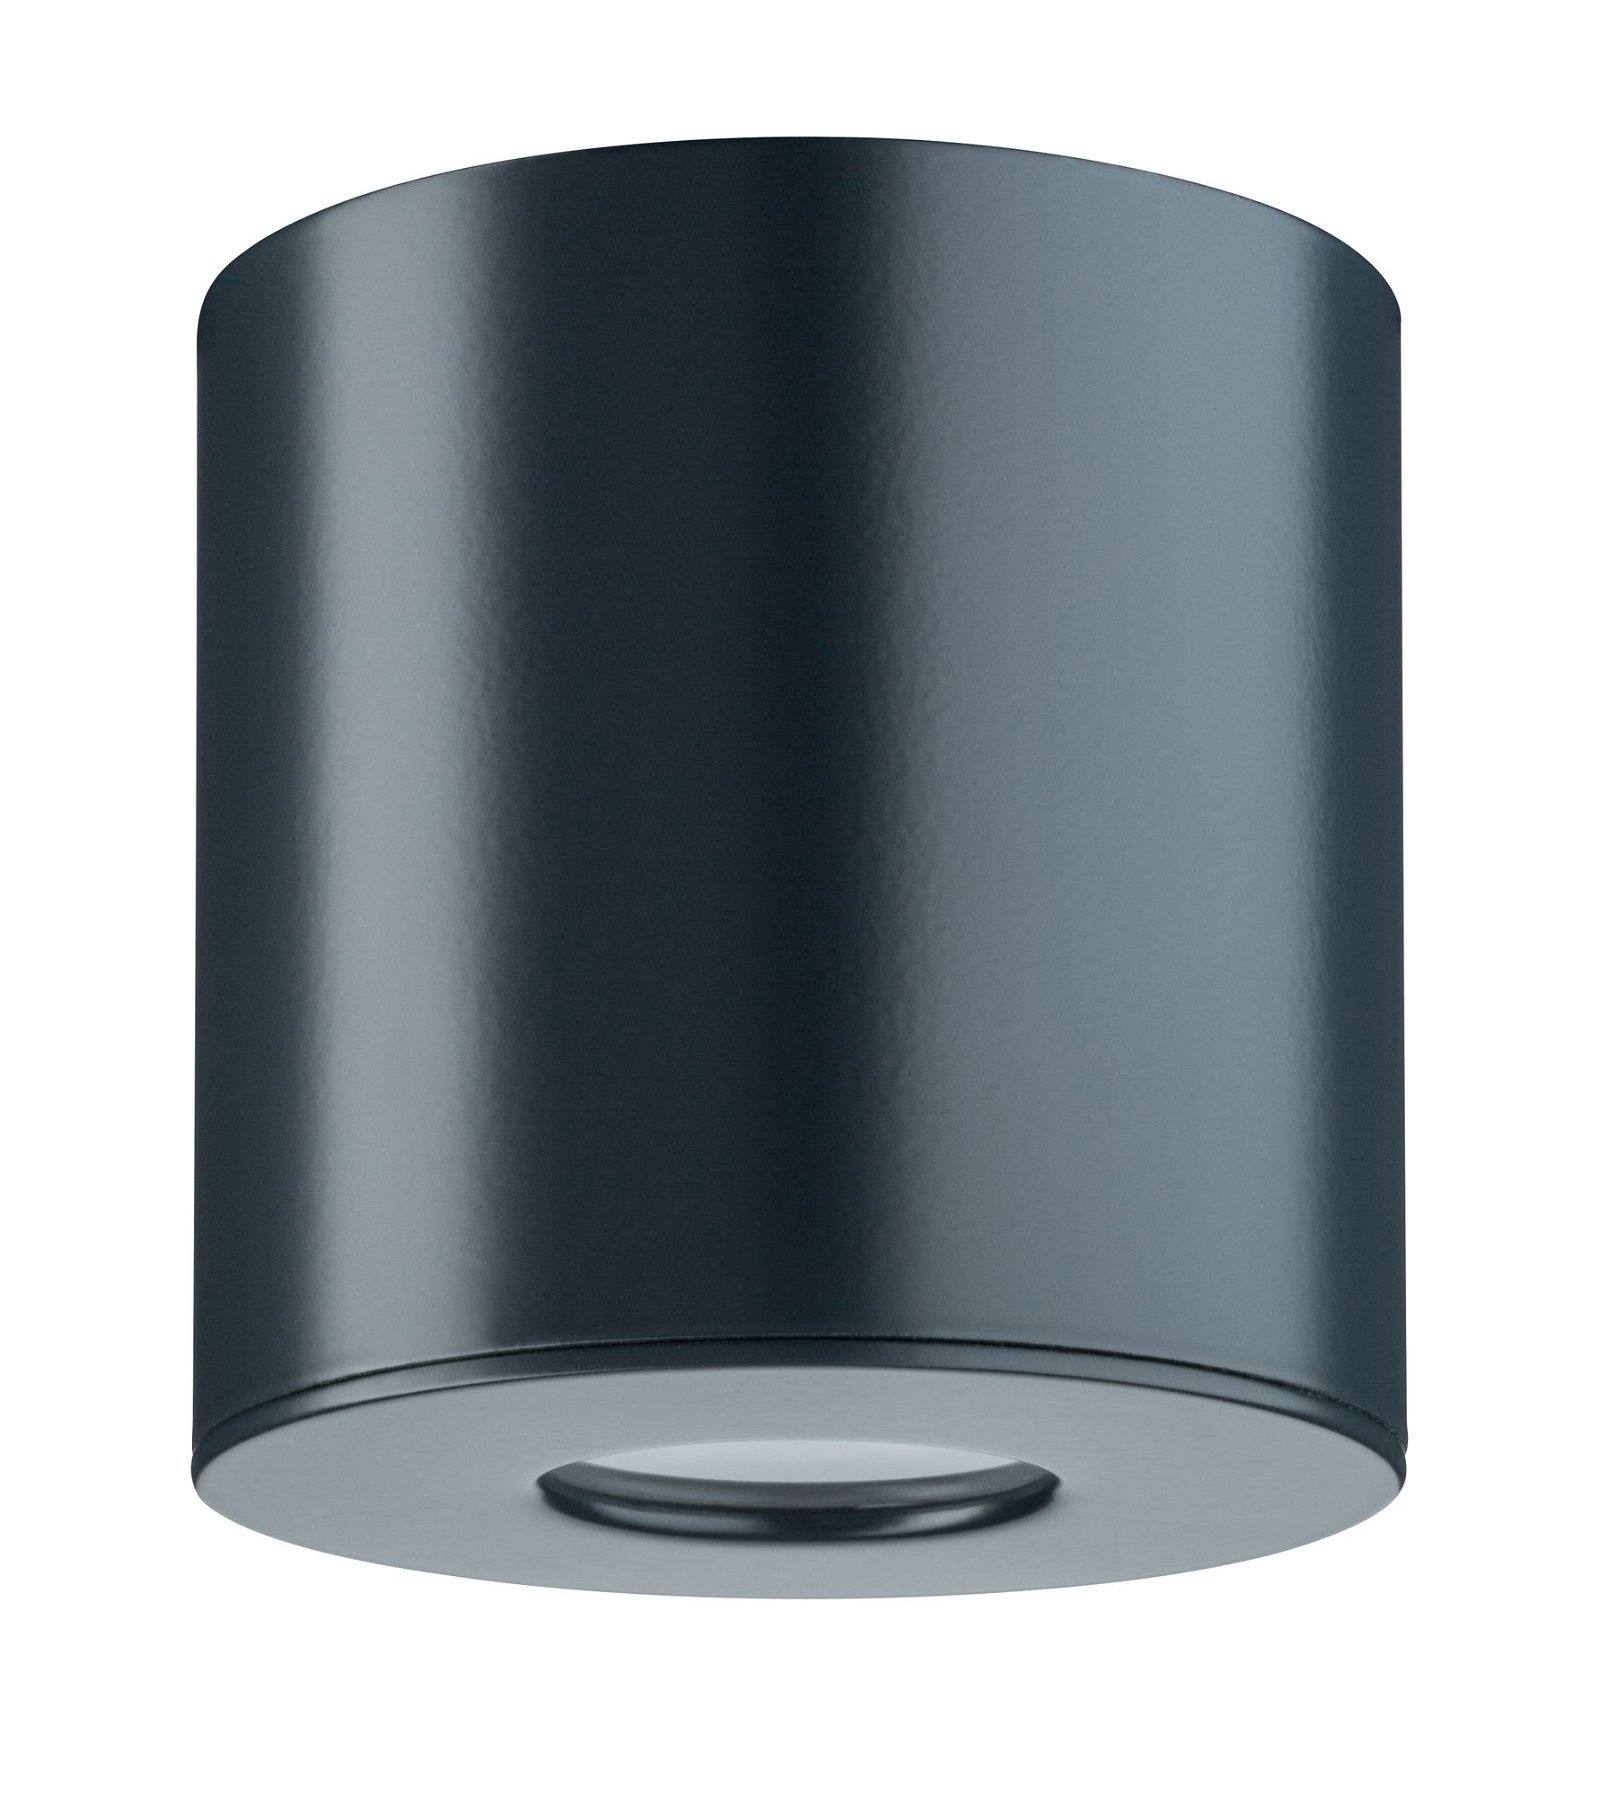 House LED Ceiling luminaire IP44 round 95mm 3000K 4,4W 410lm 230V Anthracite Aluminium/Acrylic